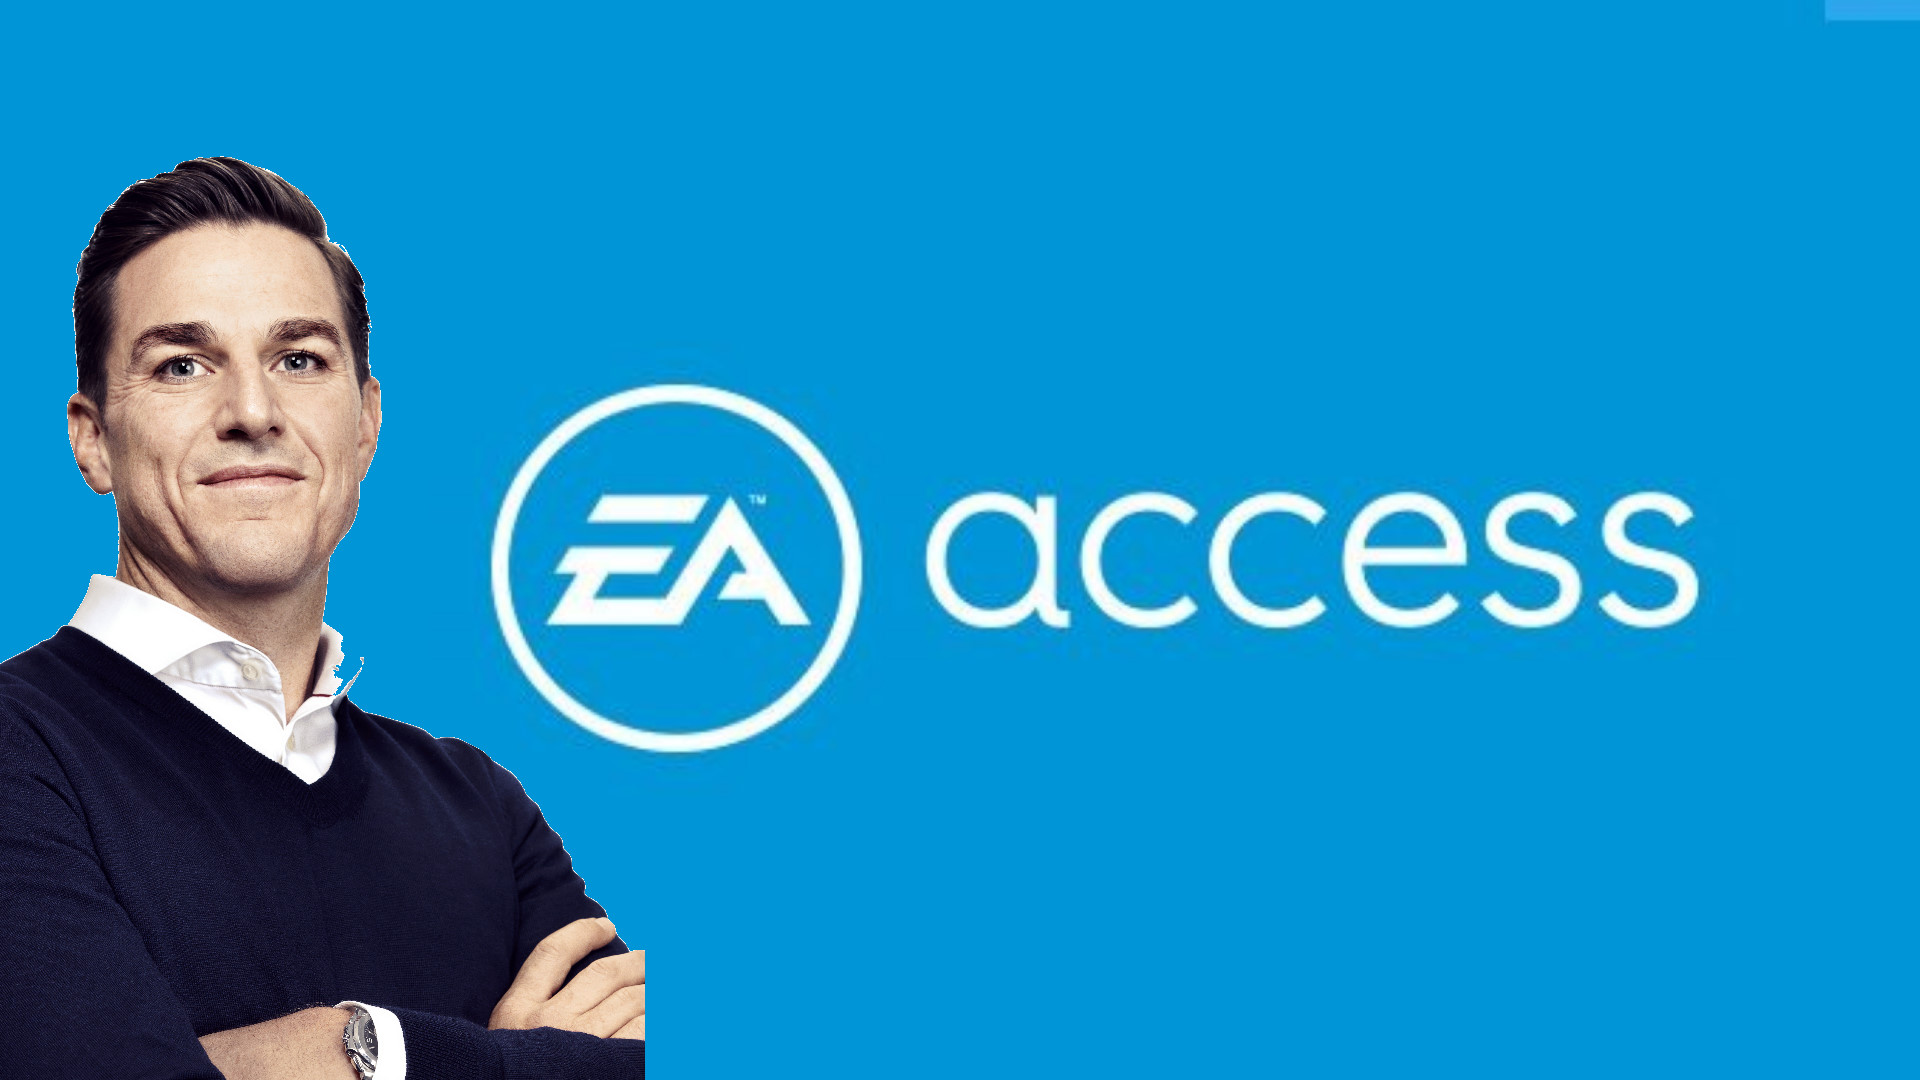 Как купить EA Access на PS4 без банковской карты или если ее не принимает